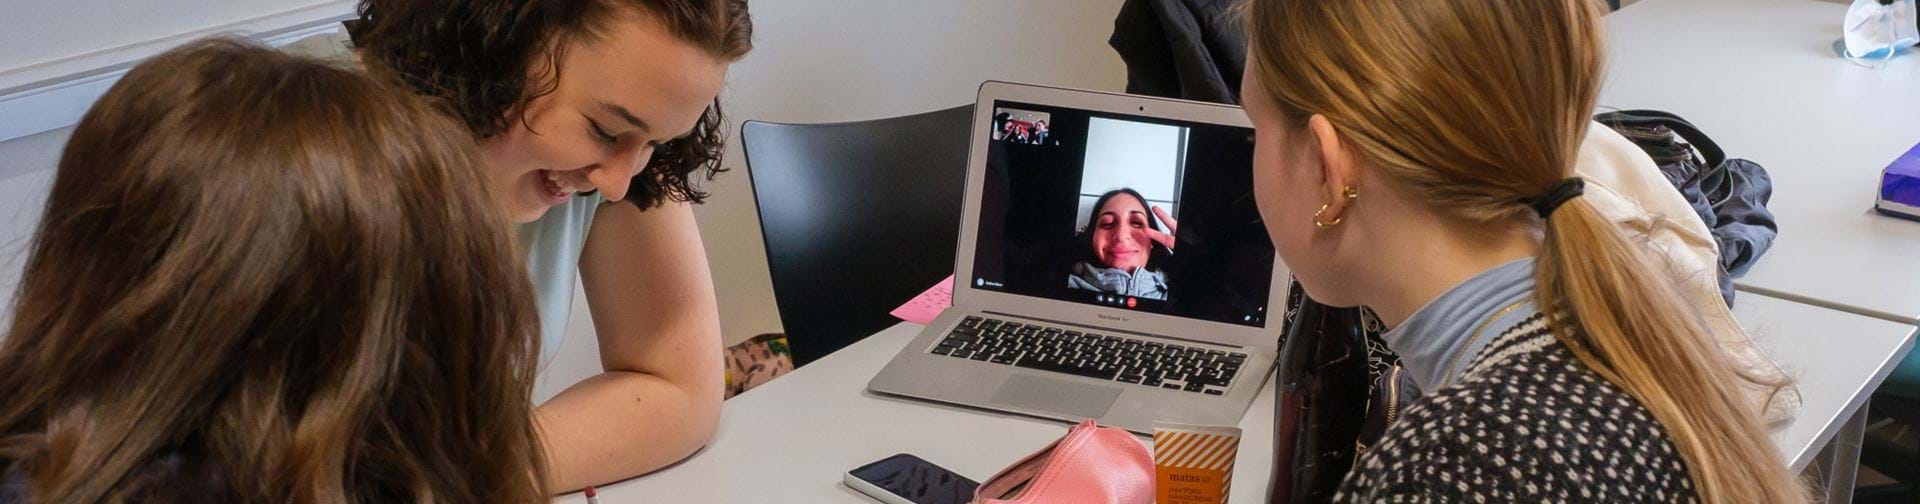 3 piger i gruppearbejde med en syg kammerat virtuelt på computeren